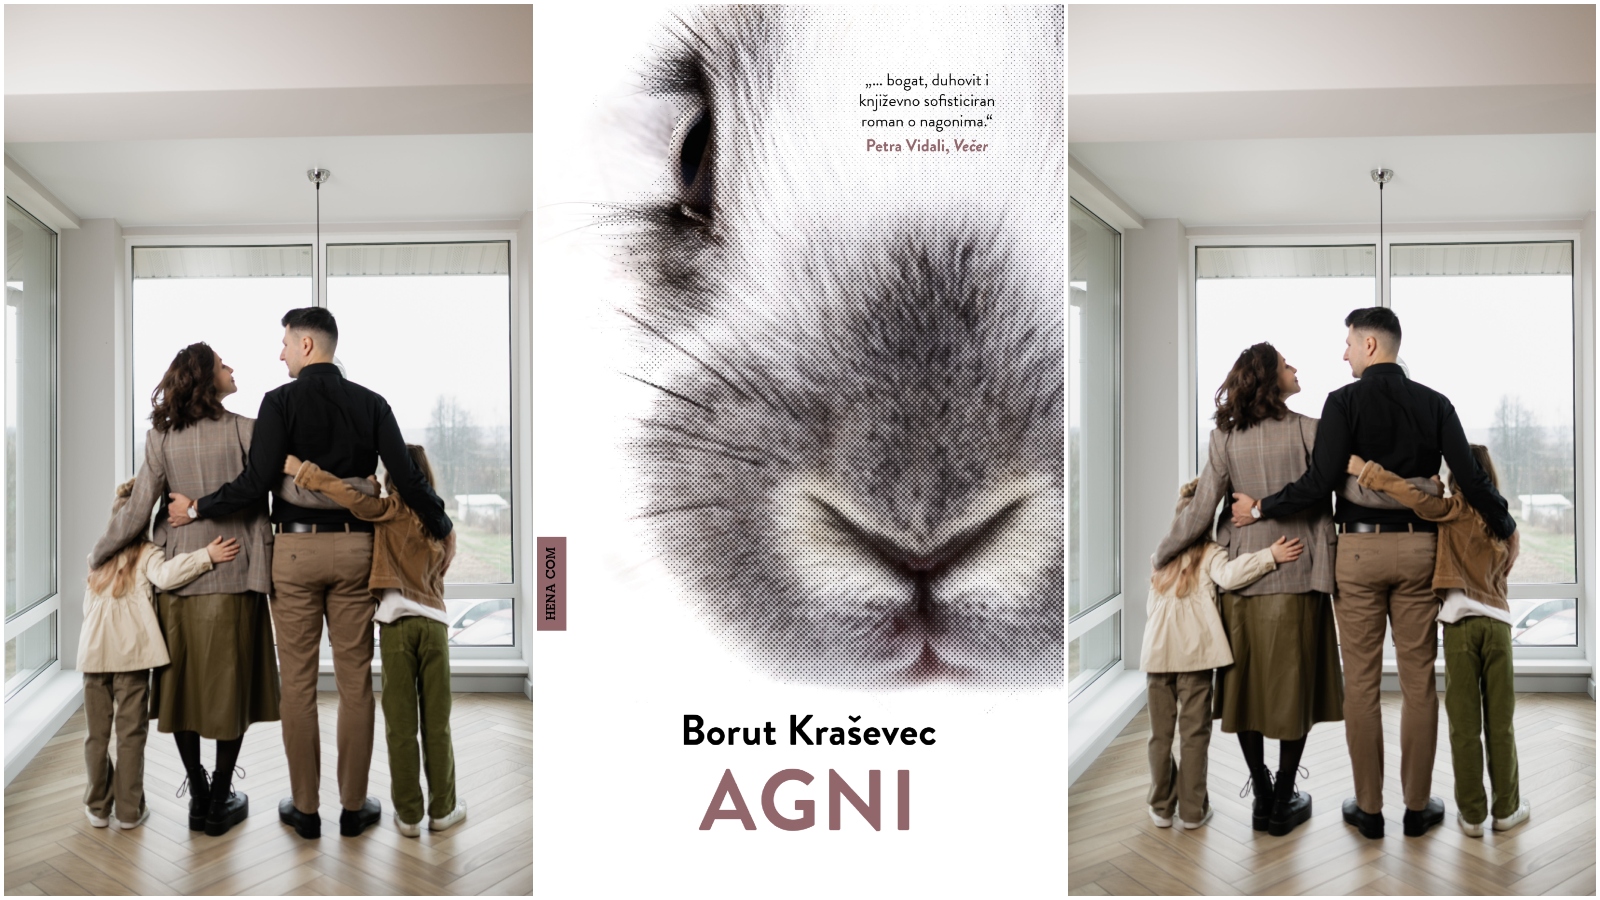 Roman Agni jedan je od najboljih slovenskih romana posljednjih godina